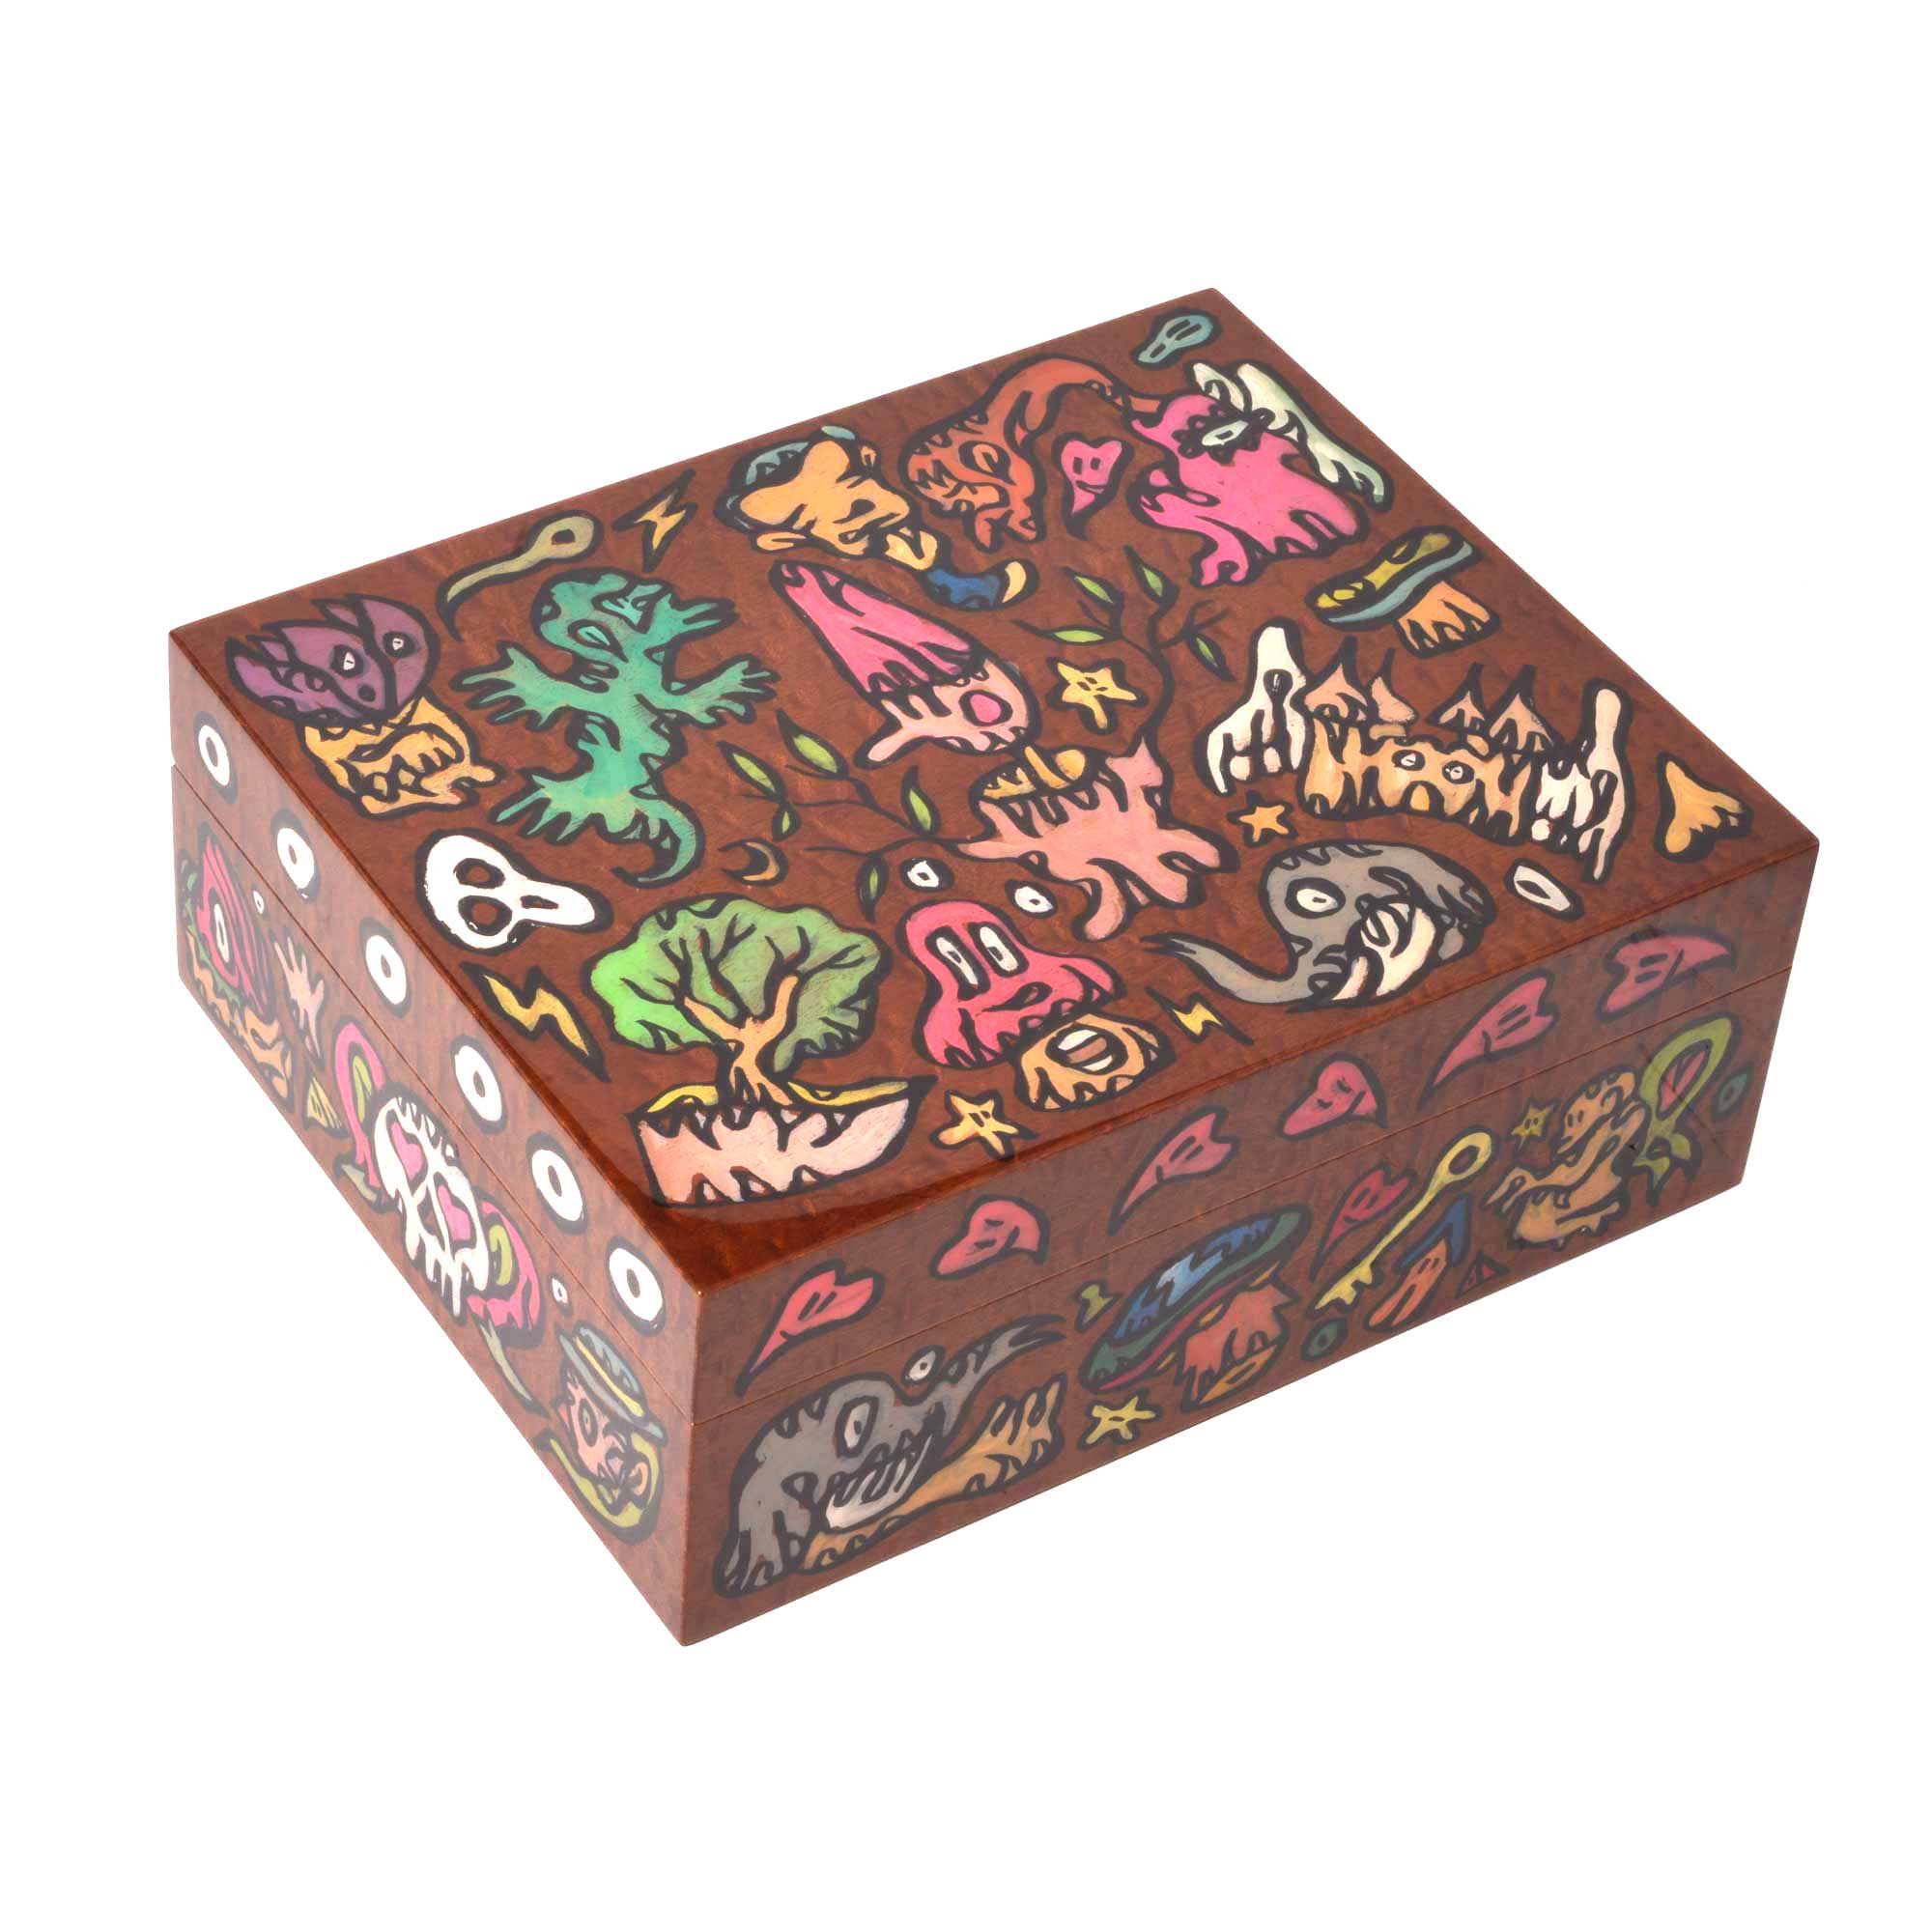 Pinocchio" 75-cigar box set by artist Fabien Verschaere